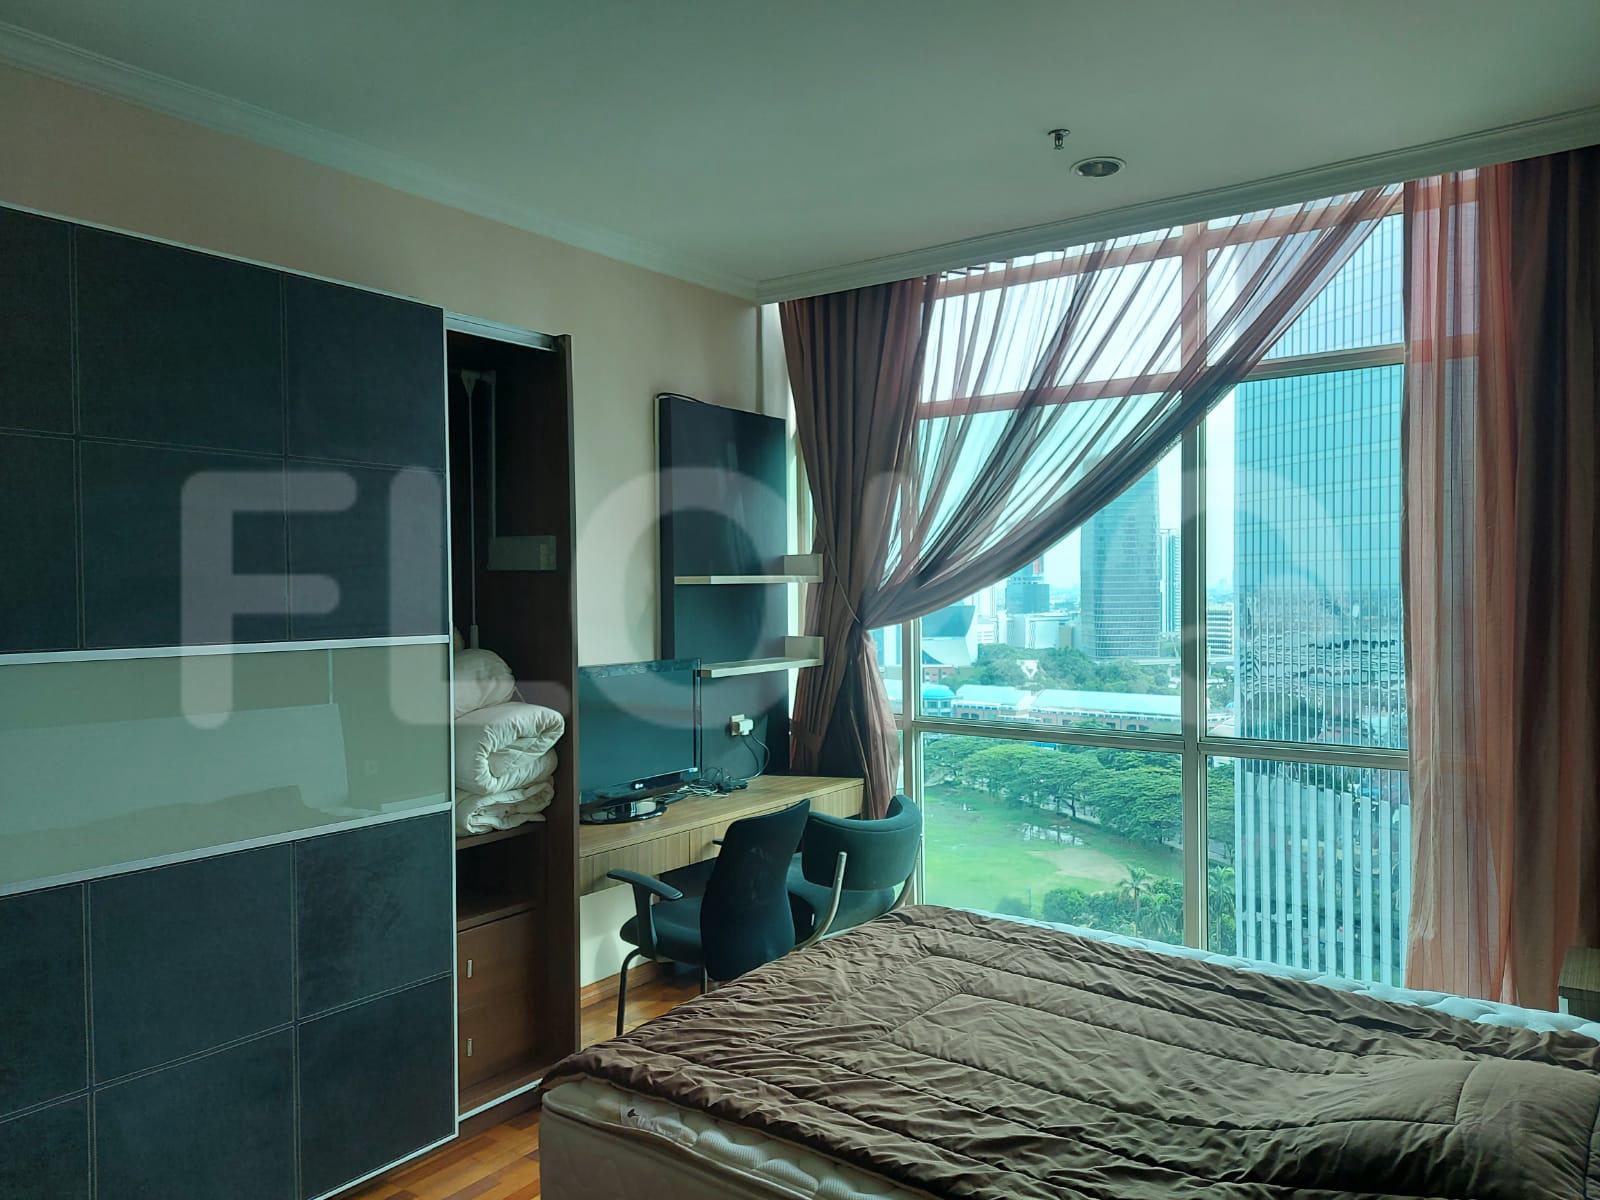 Sewa Apartemen Bellagio Mansion Tipe 4 Kamar Tidur di Lantai 14 fme9f2